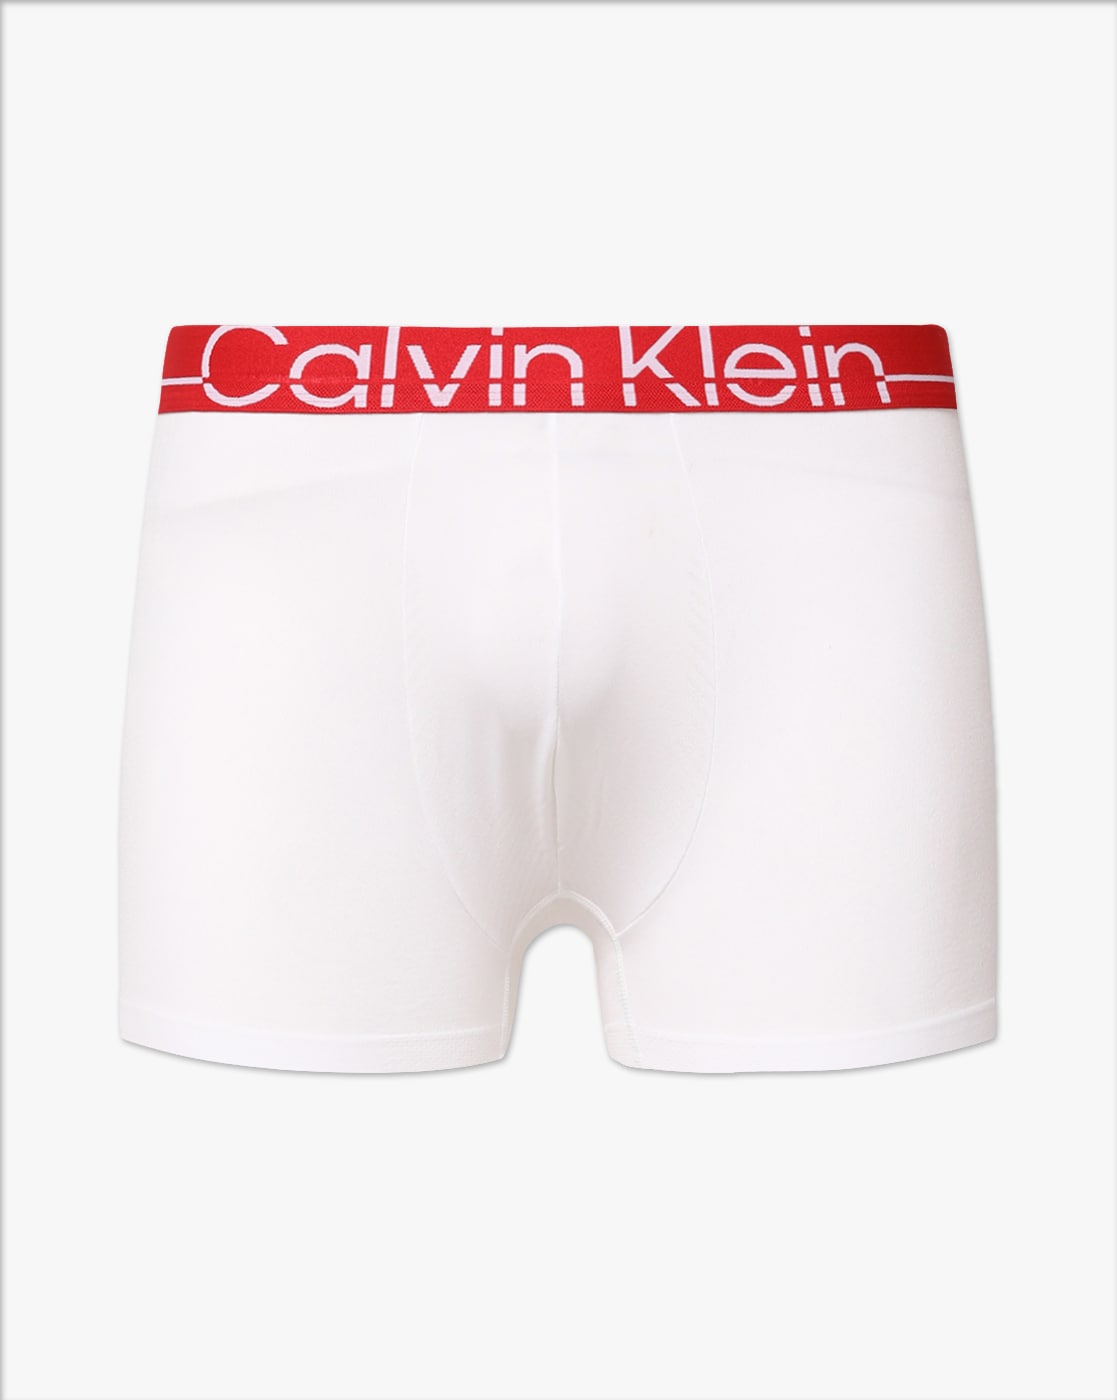 Buy White Trunks for Men by Calvin Klein Underwear Online